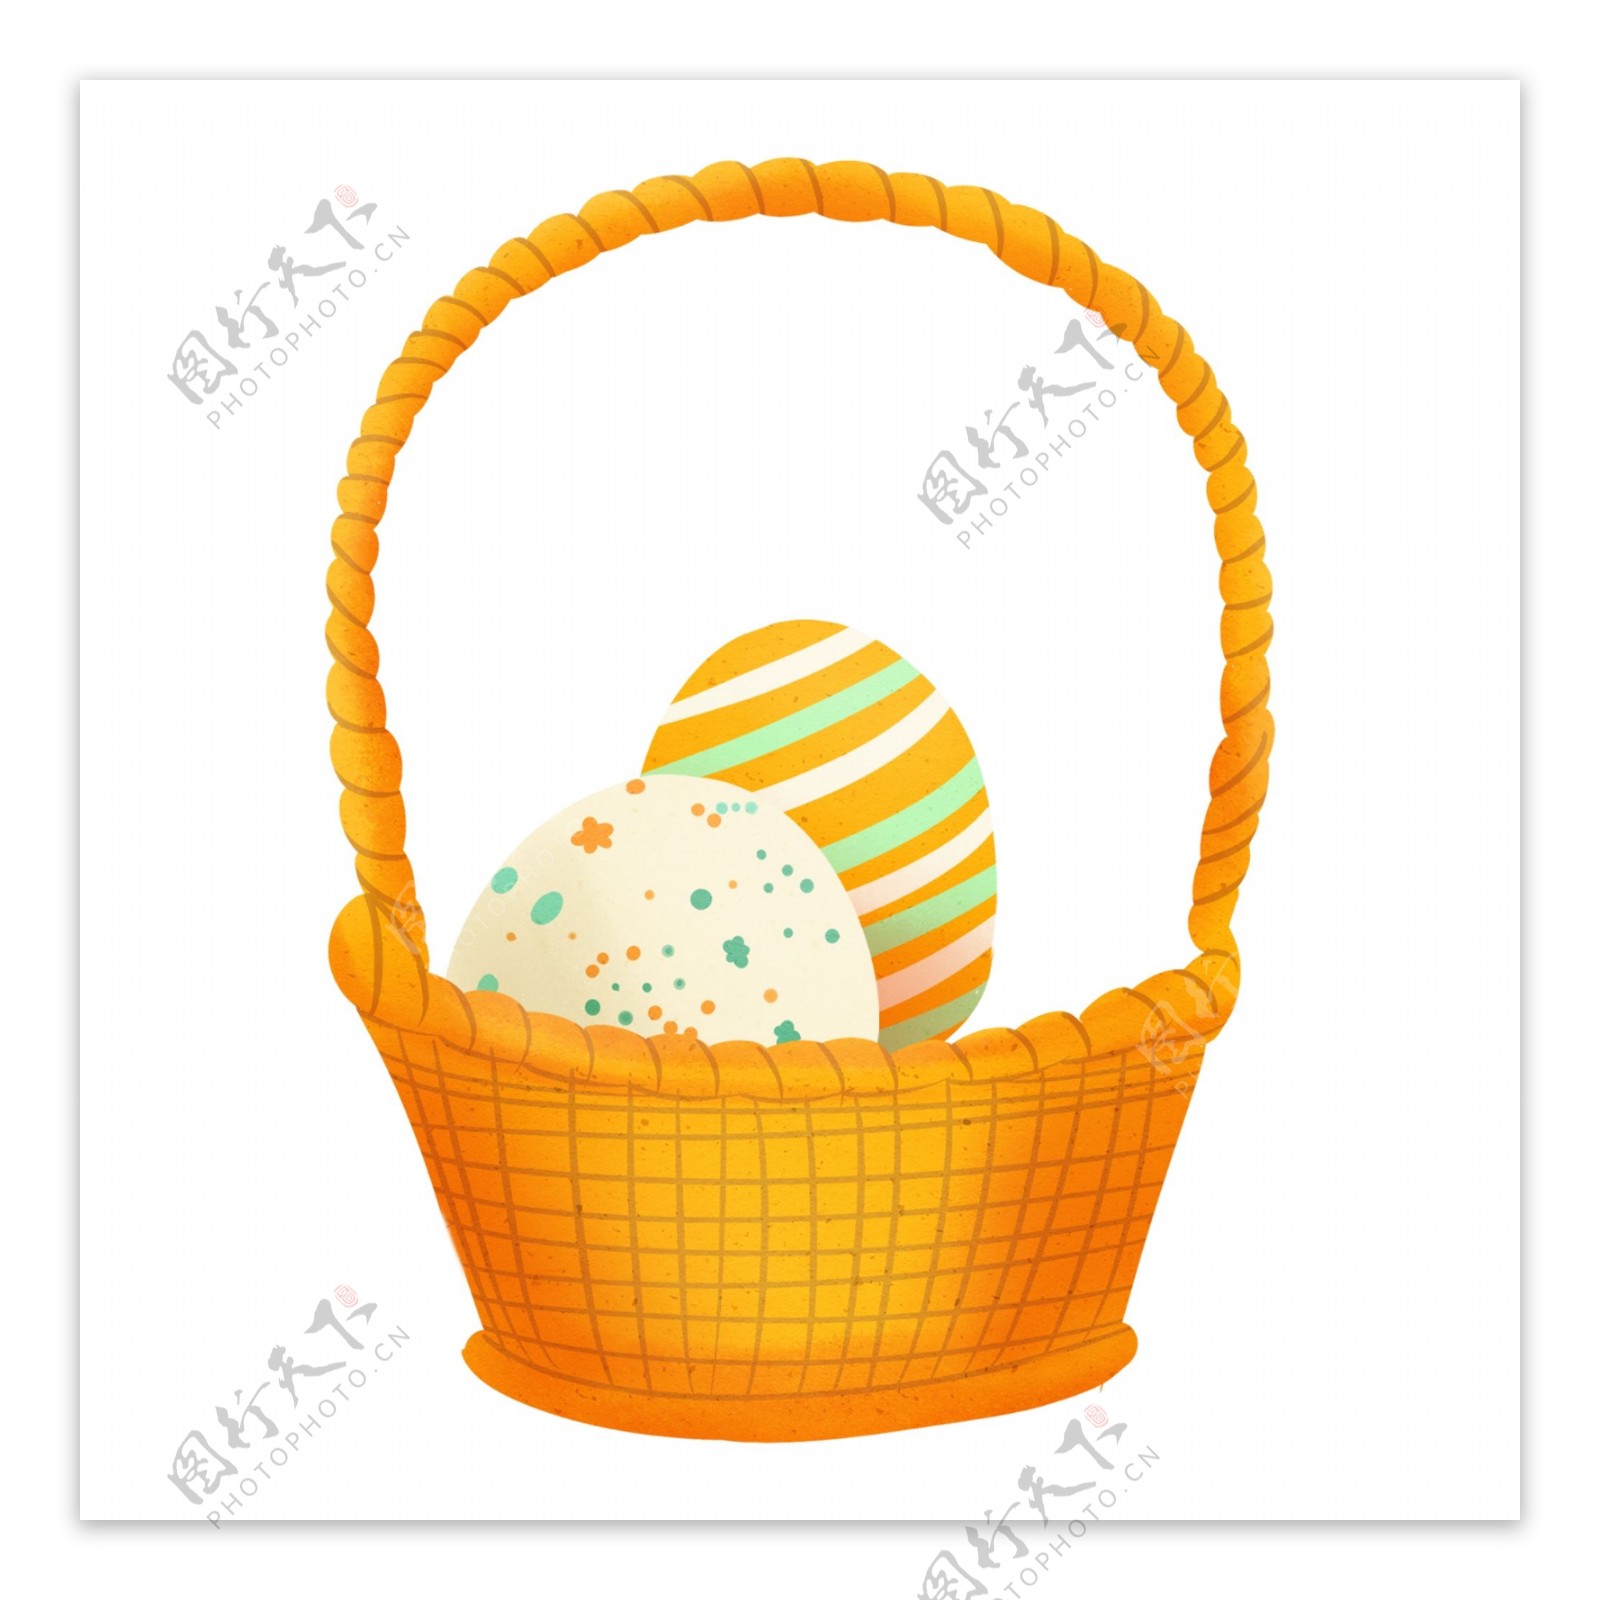 斑点色彩鸡蛋竹篮装饰元素